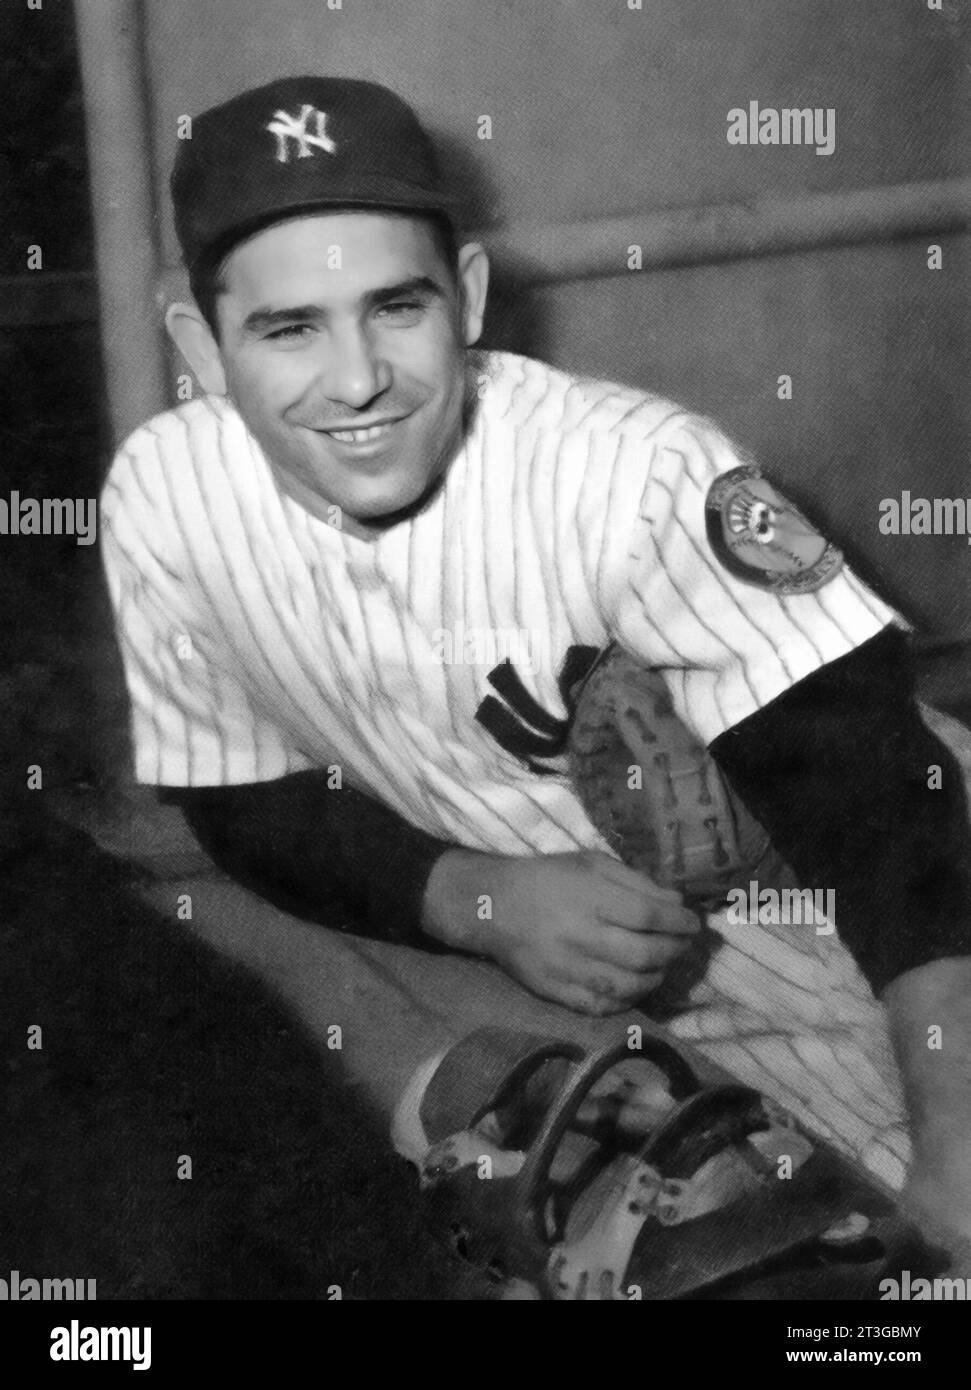 Yogi Berra. Portrait du joueur de baseball américain Lawrence Peter 'Yogi' Berra (1925-2015) en uniforme des New York Yankees, carte bubblegum, 1953 Banque D'Images